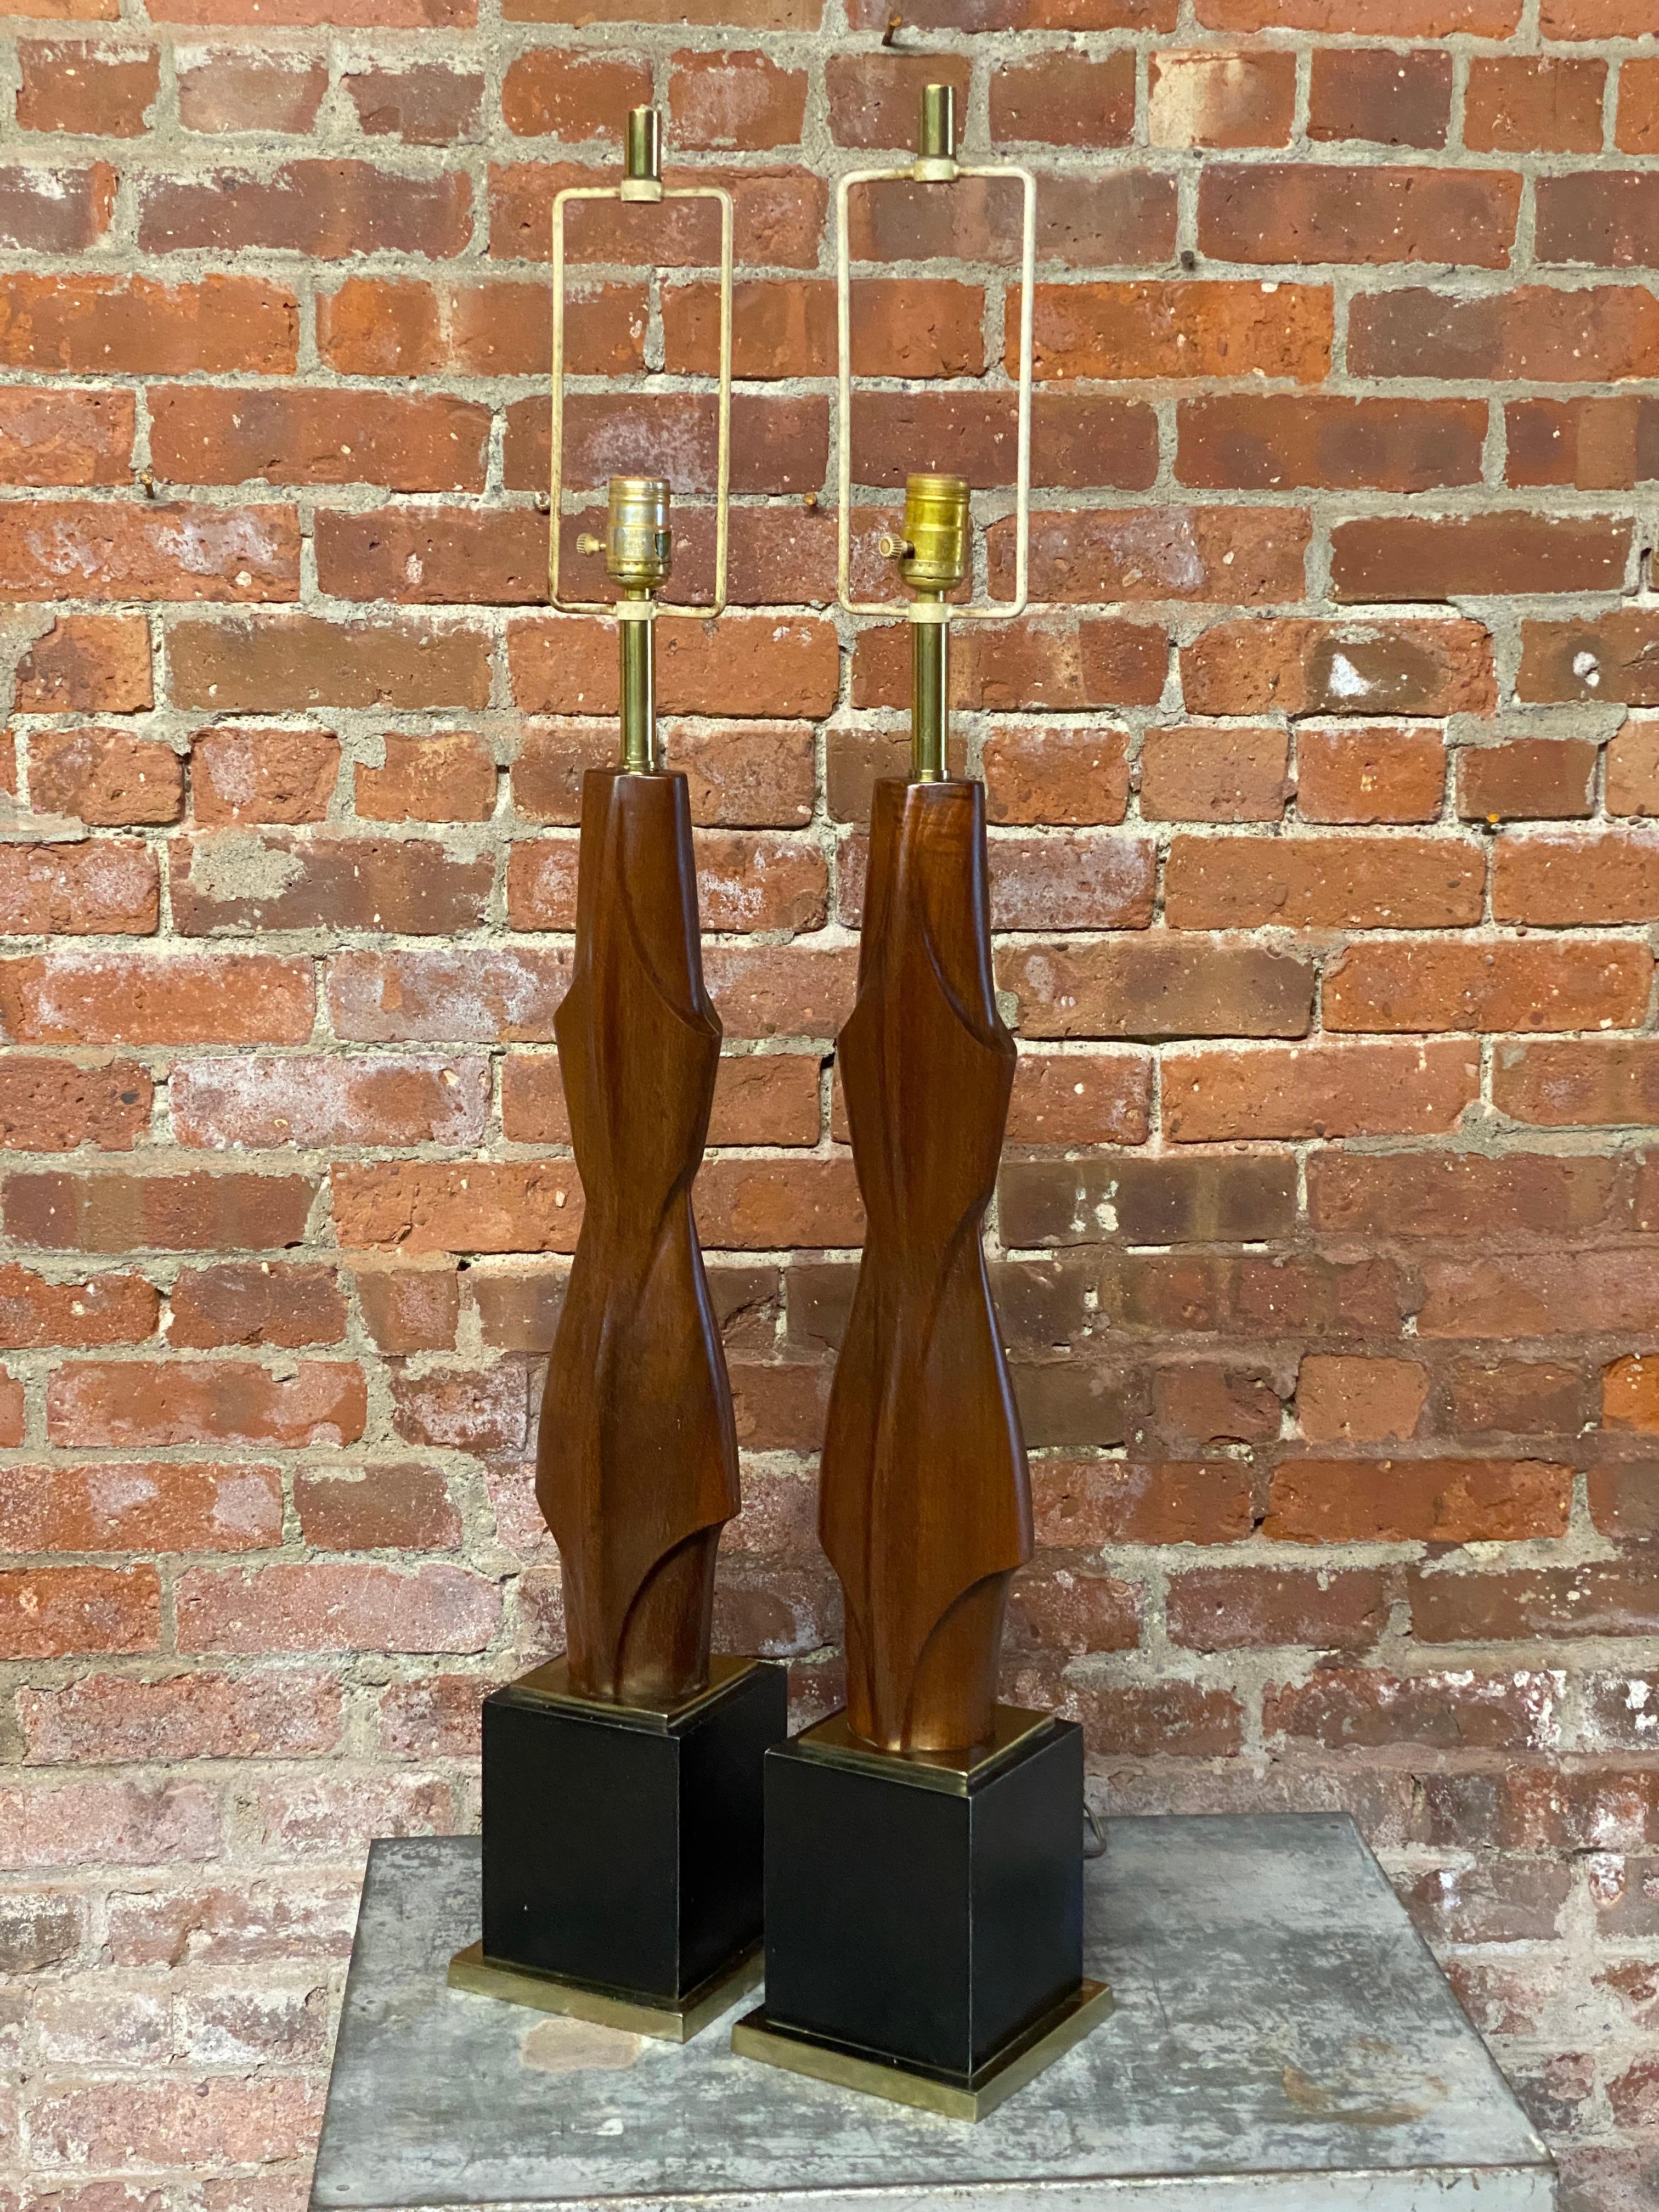 Une magnifique paire de lampes de table Laurel en noyer massif sculpté. La forme et les courbes de la lampe de table en font une forme d'art sculpturale. Chaque exemple conserve l'étiquette sur chaque douille d'ampoule, Laurel Lamp MFG. CO., INC. de